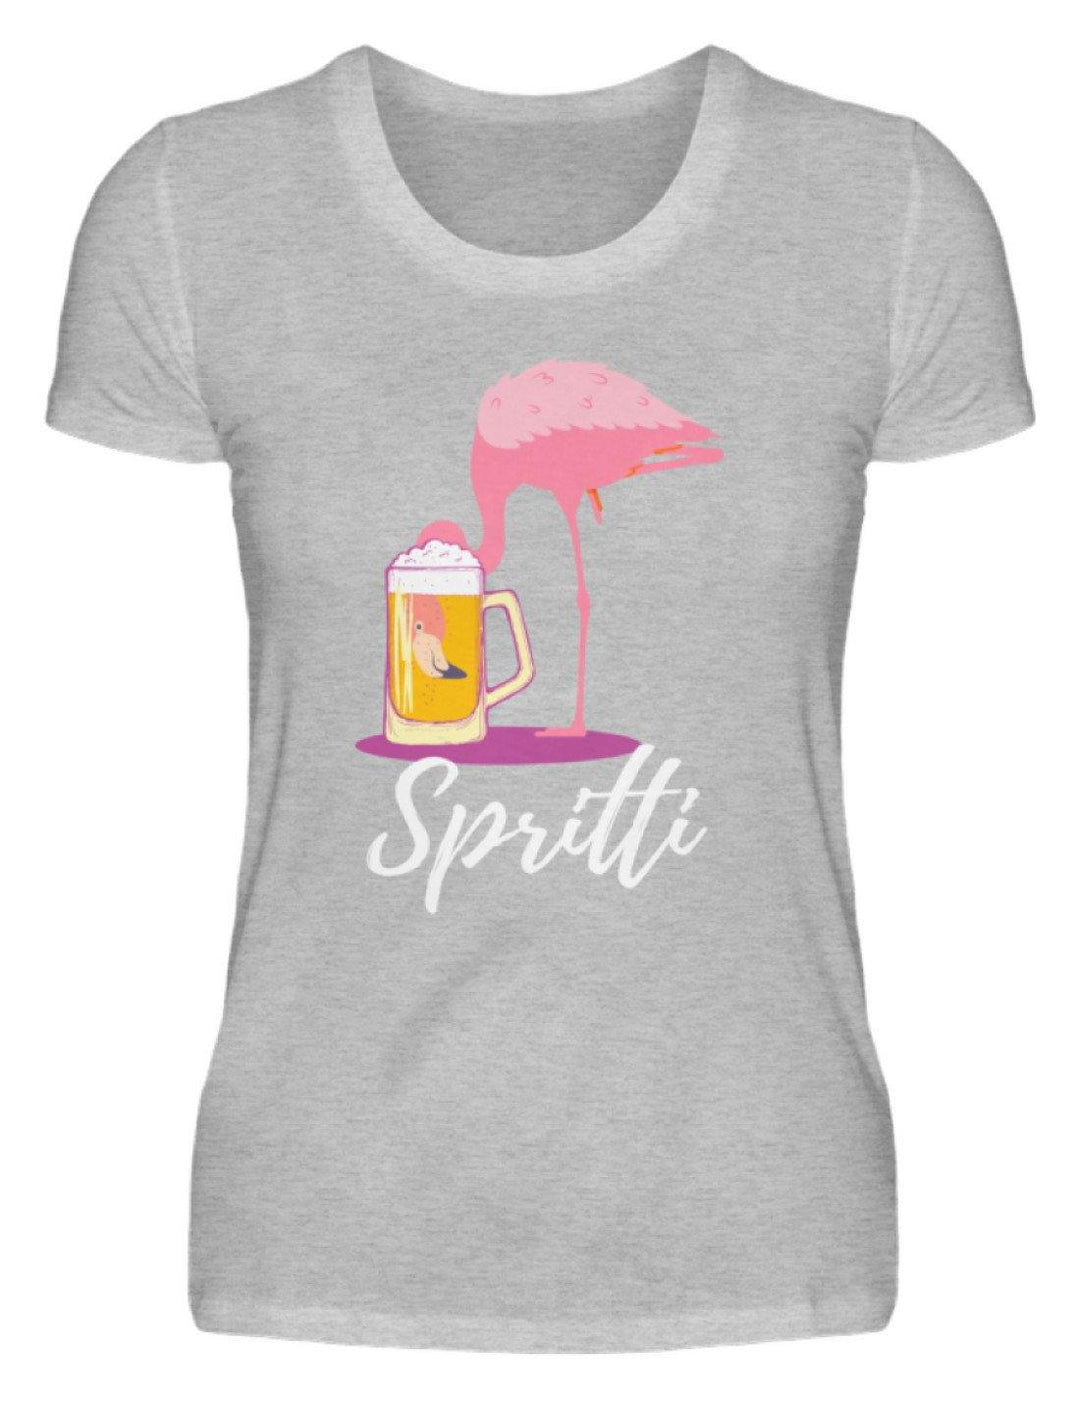 Flamingo Spritti - Words on Shirt  - Damenshirt - Words on Shirts Sag es mit dem Mittelfinger Shirts Hoodies Sweatshirt Taschen Gymsack Spruch Sprüche Statement